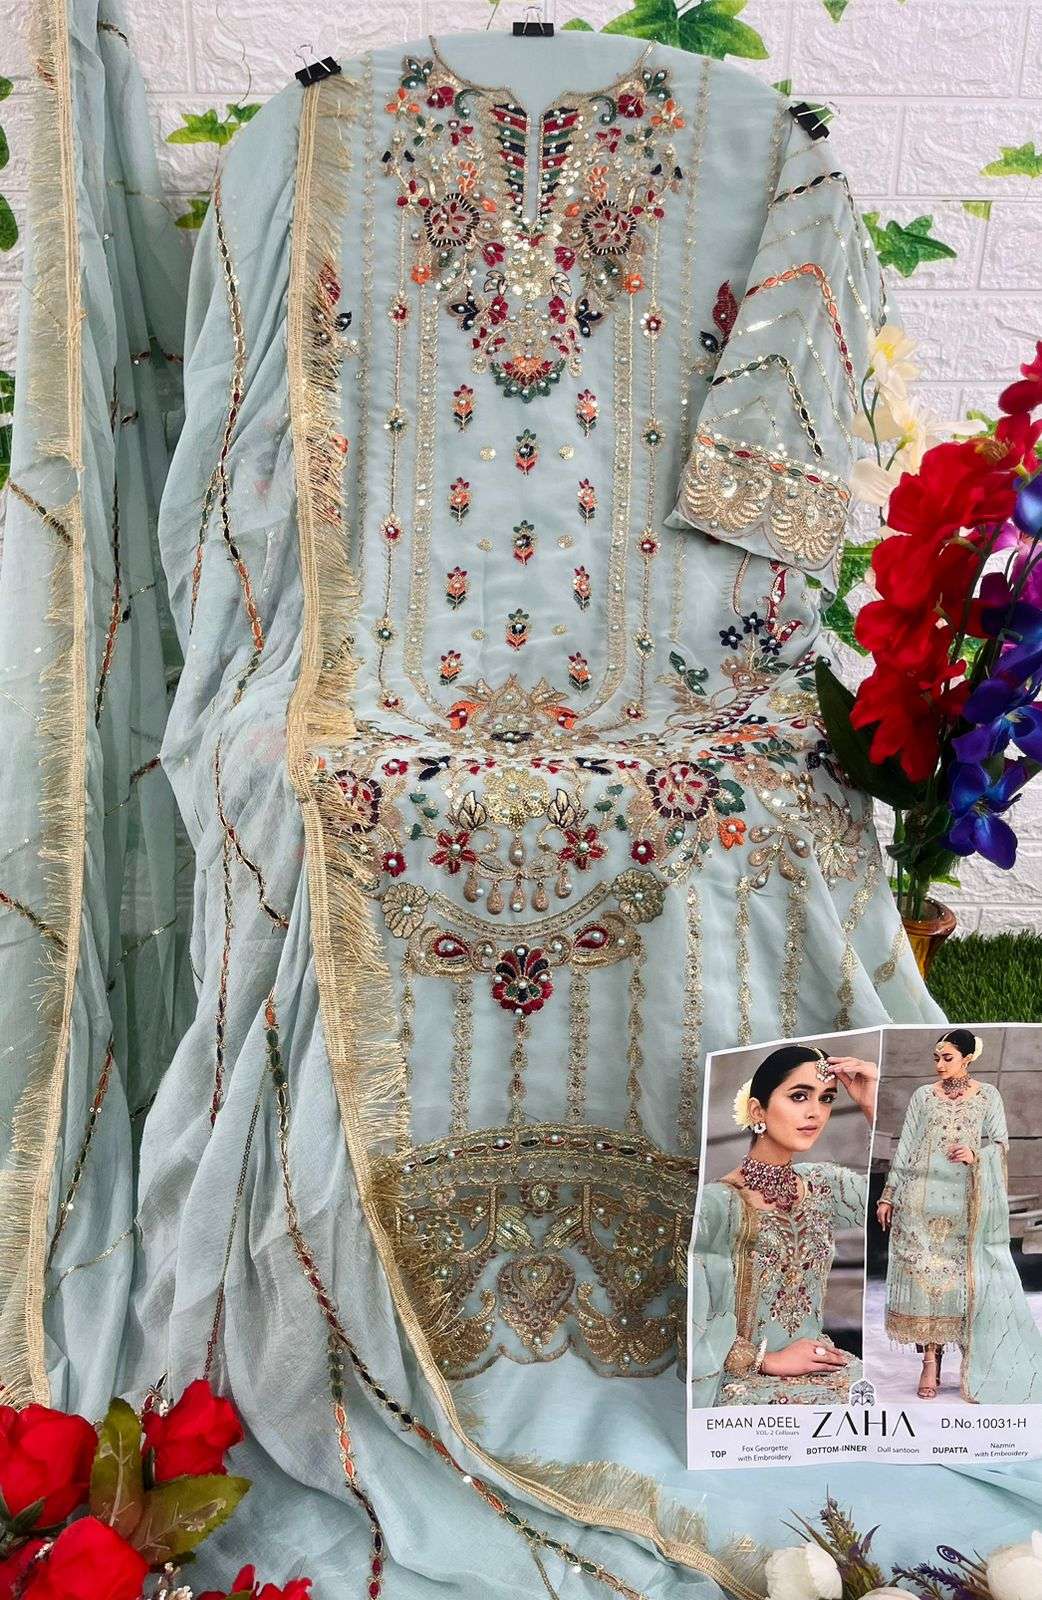 zaha by emaan adeel vol 2 colours georgette designer pakisatni salwar kameez wholesale dealer surat 